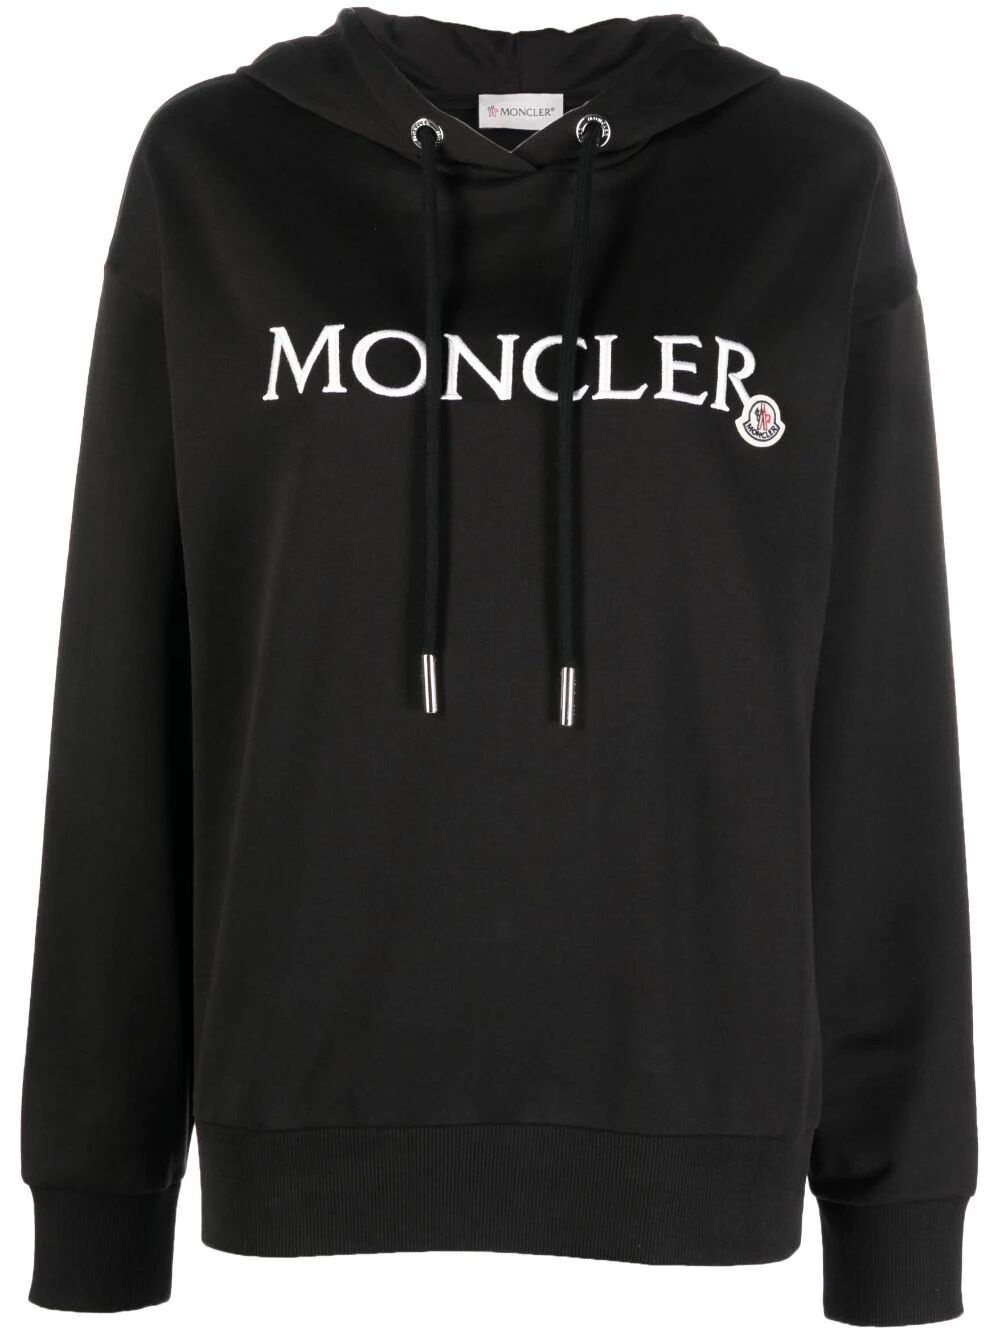 MONCLER HOODIE - 4